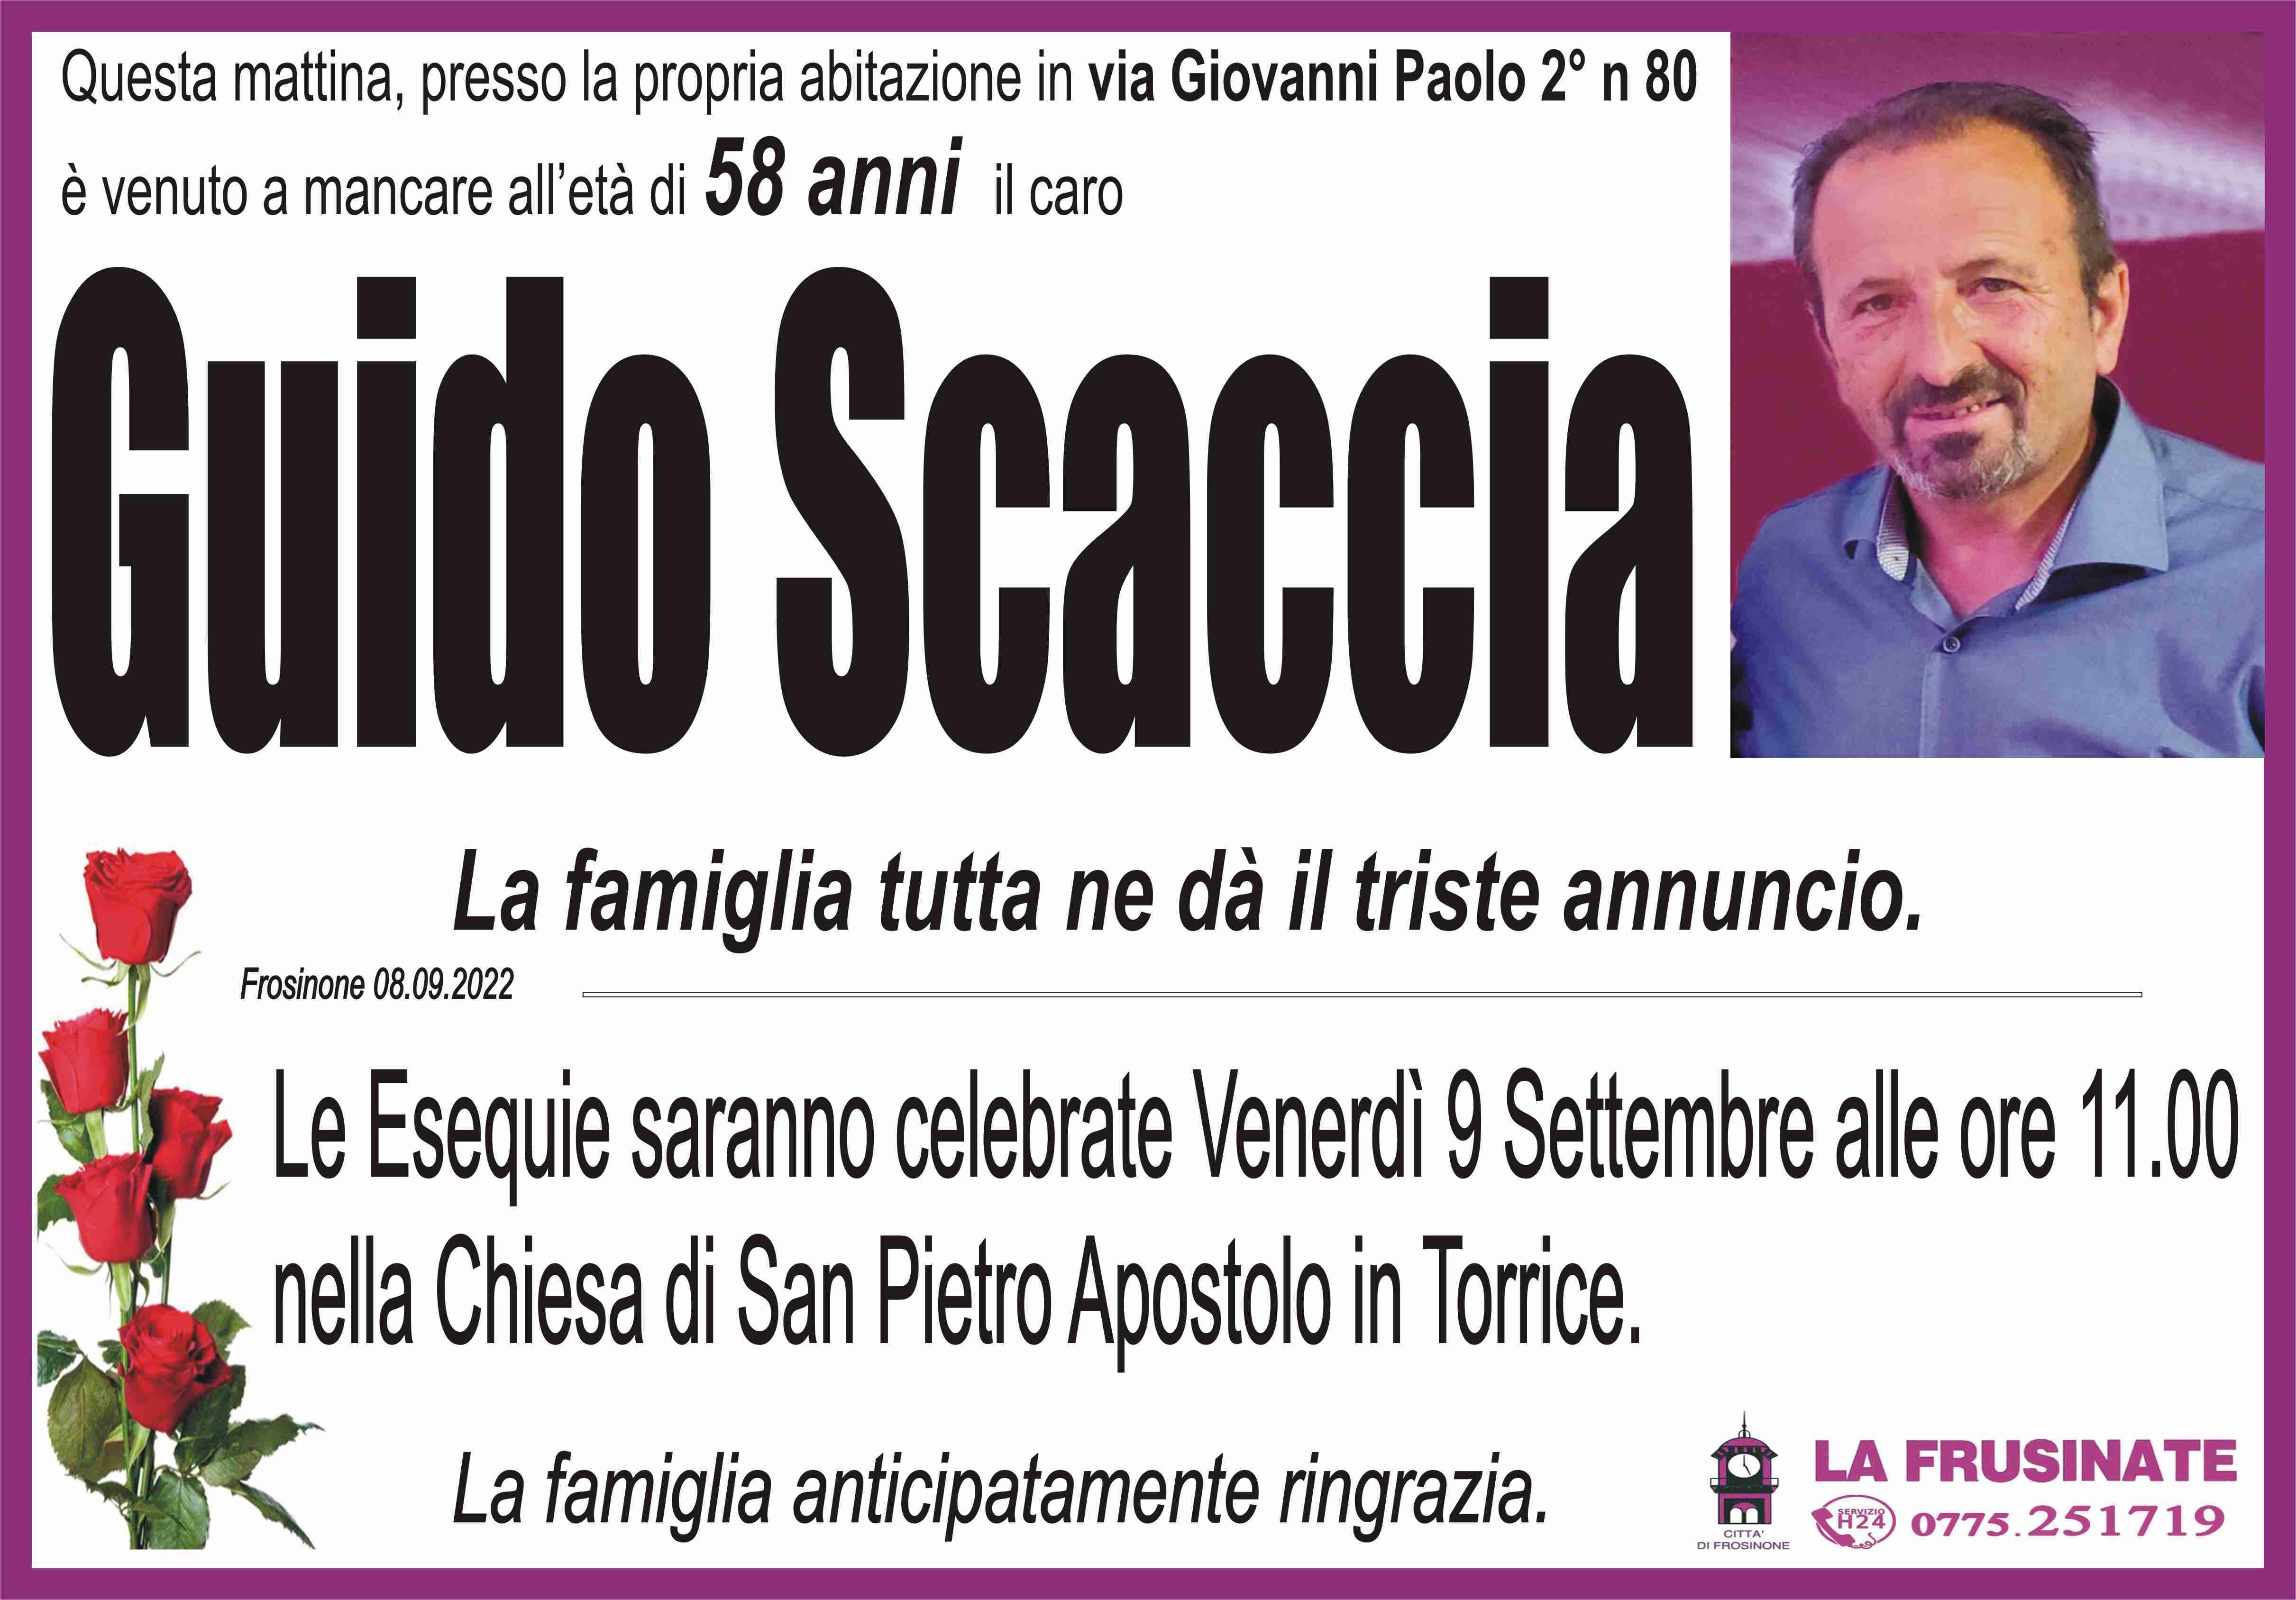 Guido Scaccia